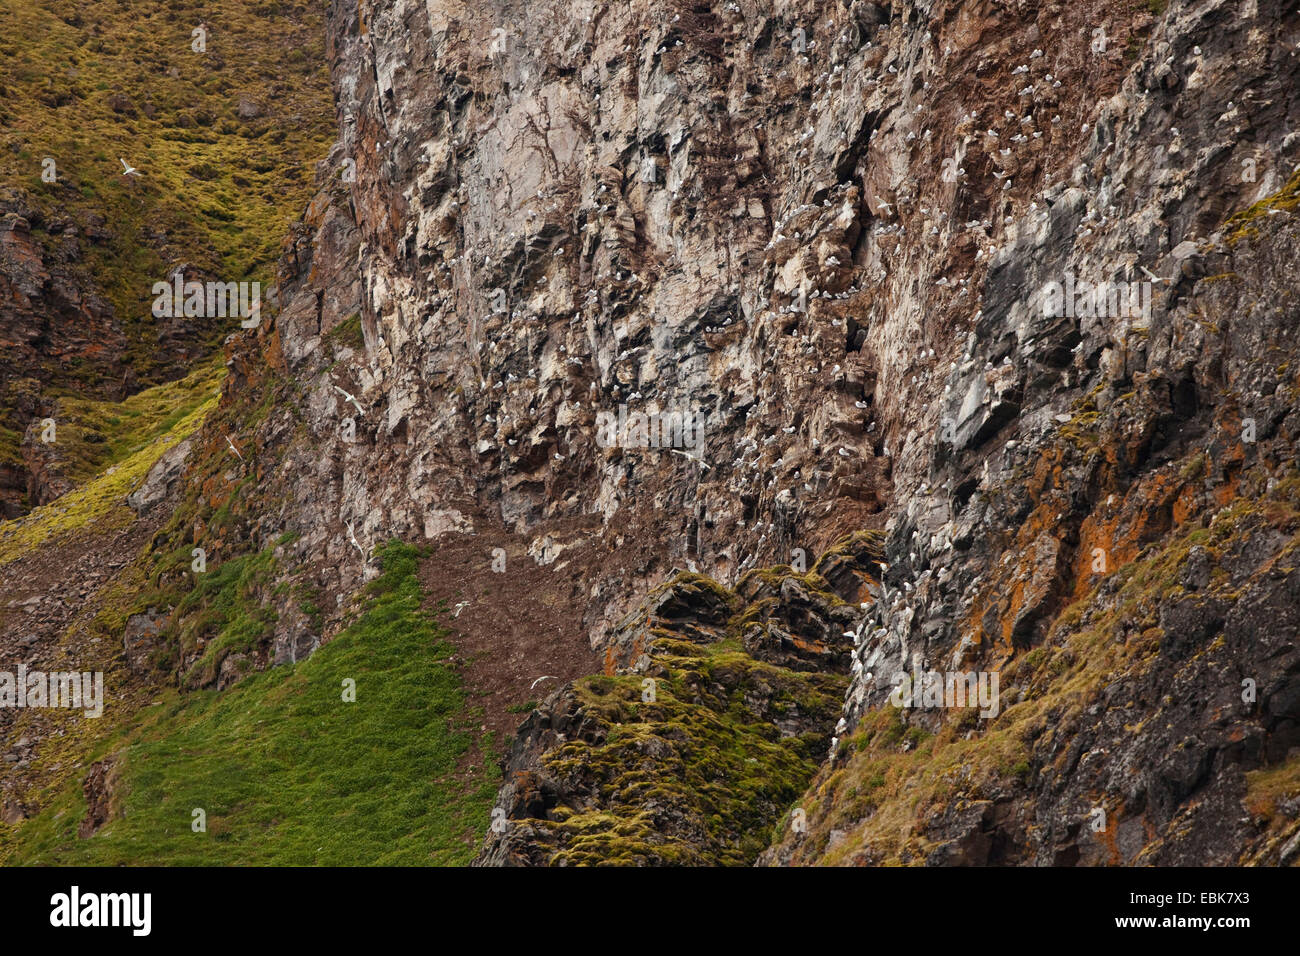 Nero-zampe (kittiwake Rissa tridactyla, Larus tridactyla), colonia in parete rocciosa di un fiordo, Norvegia Isole Svalbard, Krossfjorden Foto Stock